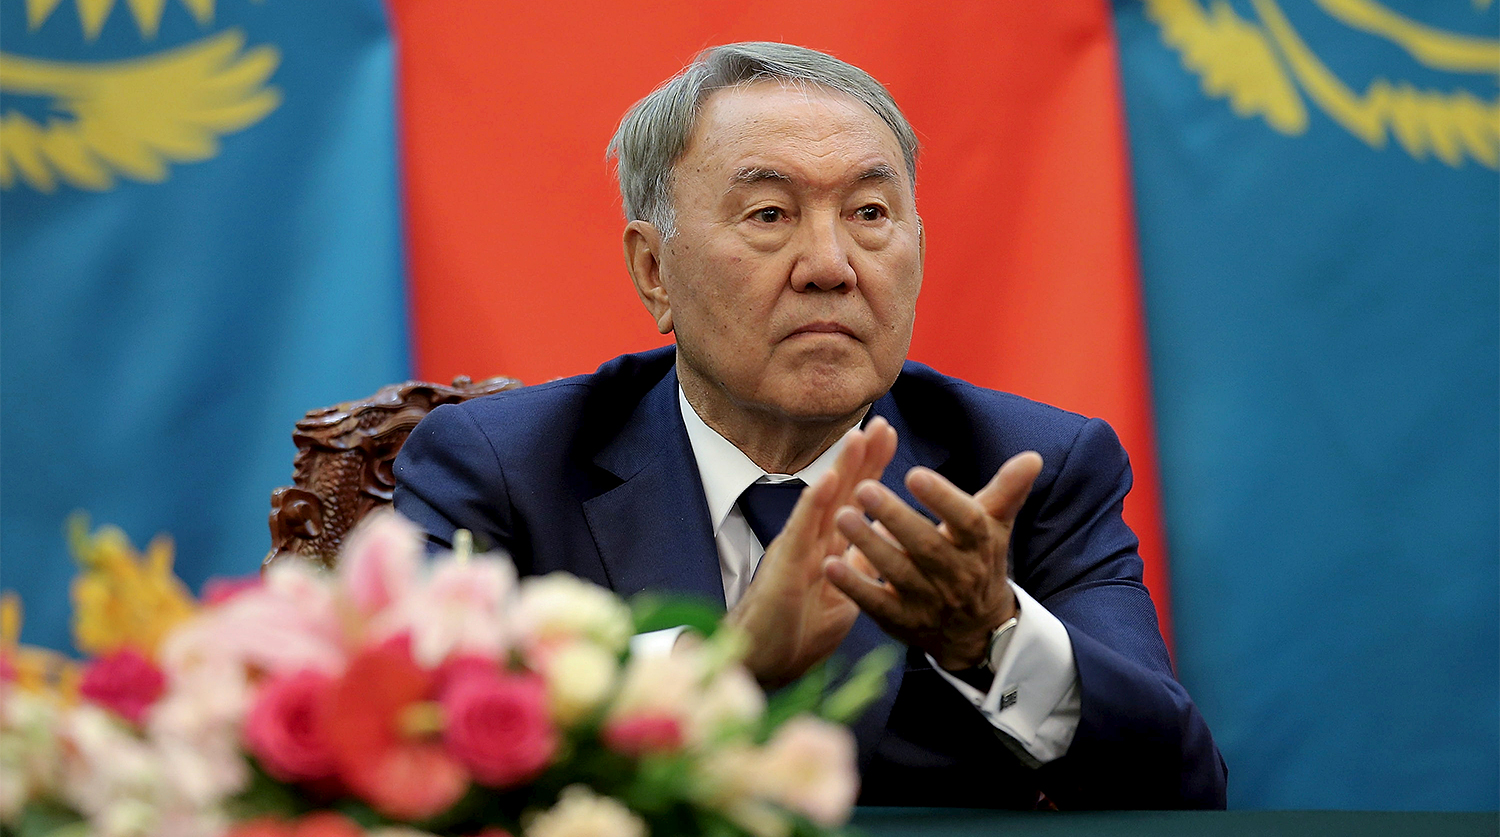 Президент Казахстана Нурсултан Назарбаев во время церемонии в Пекине, 2015 год.